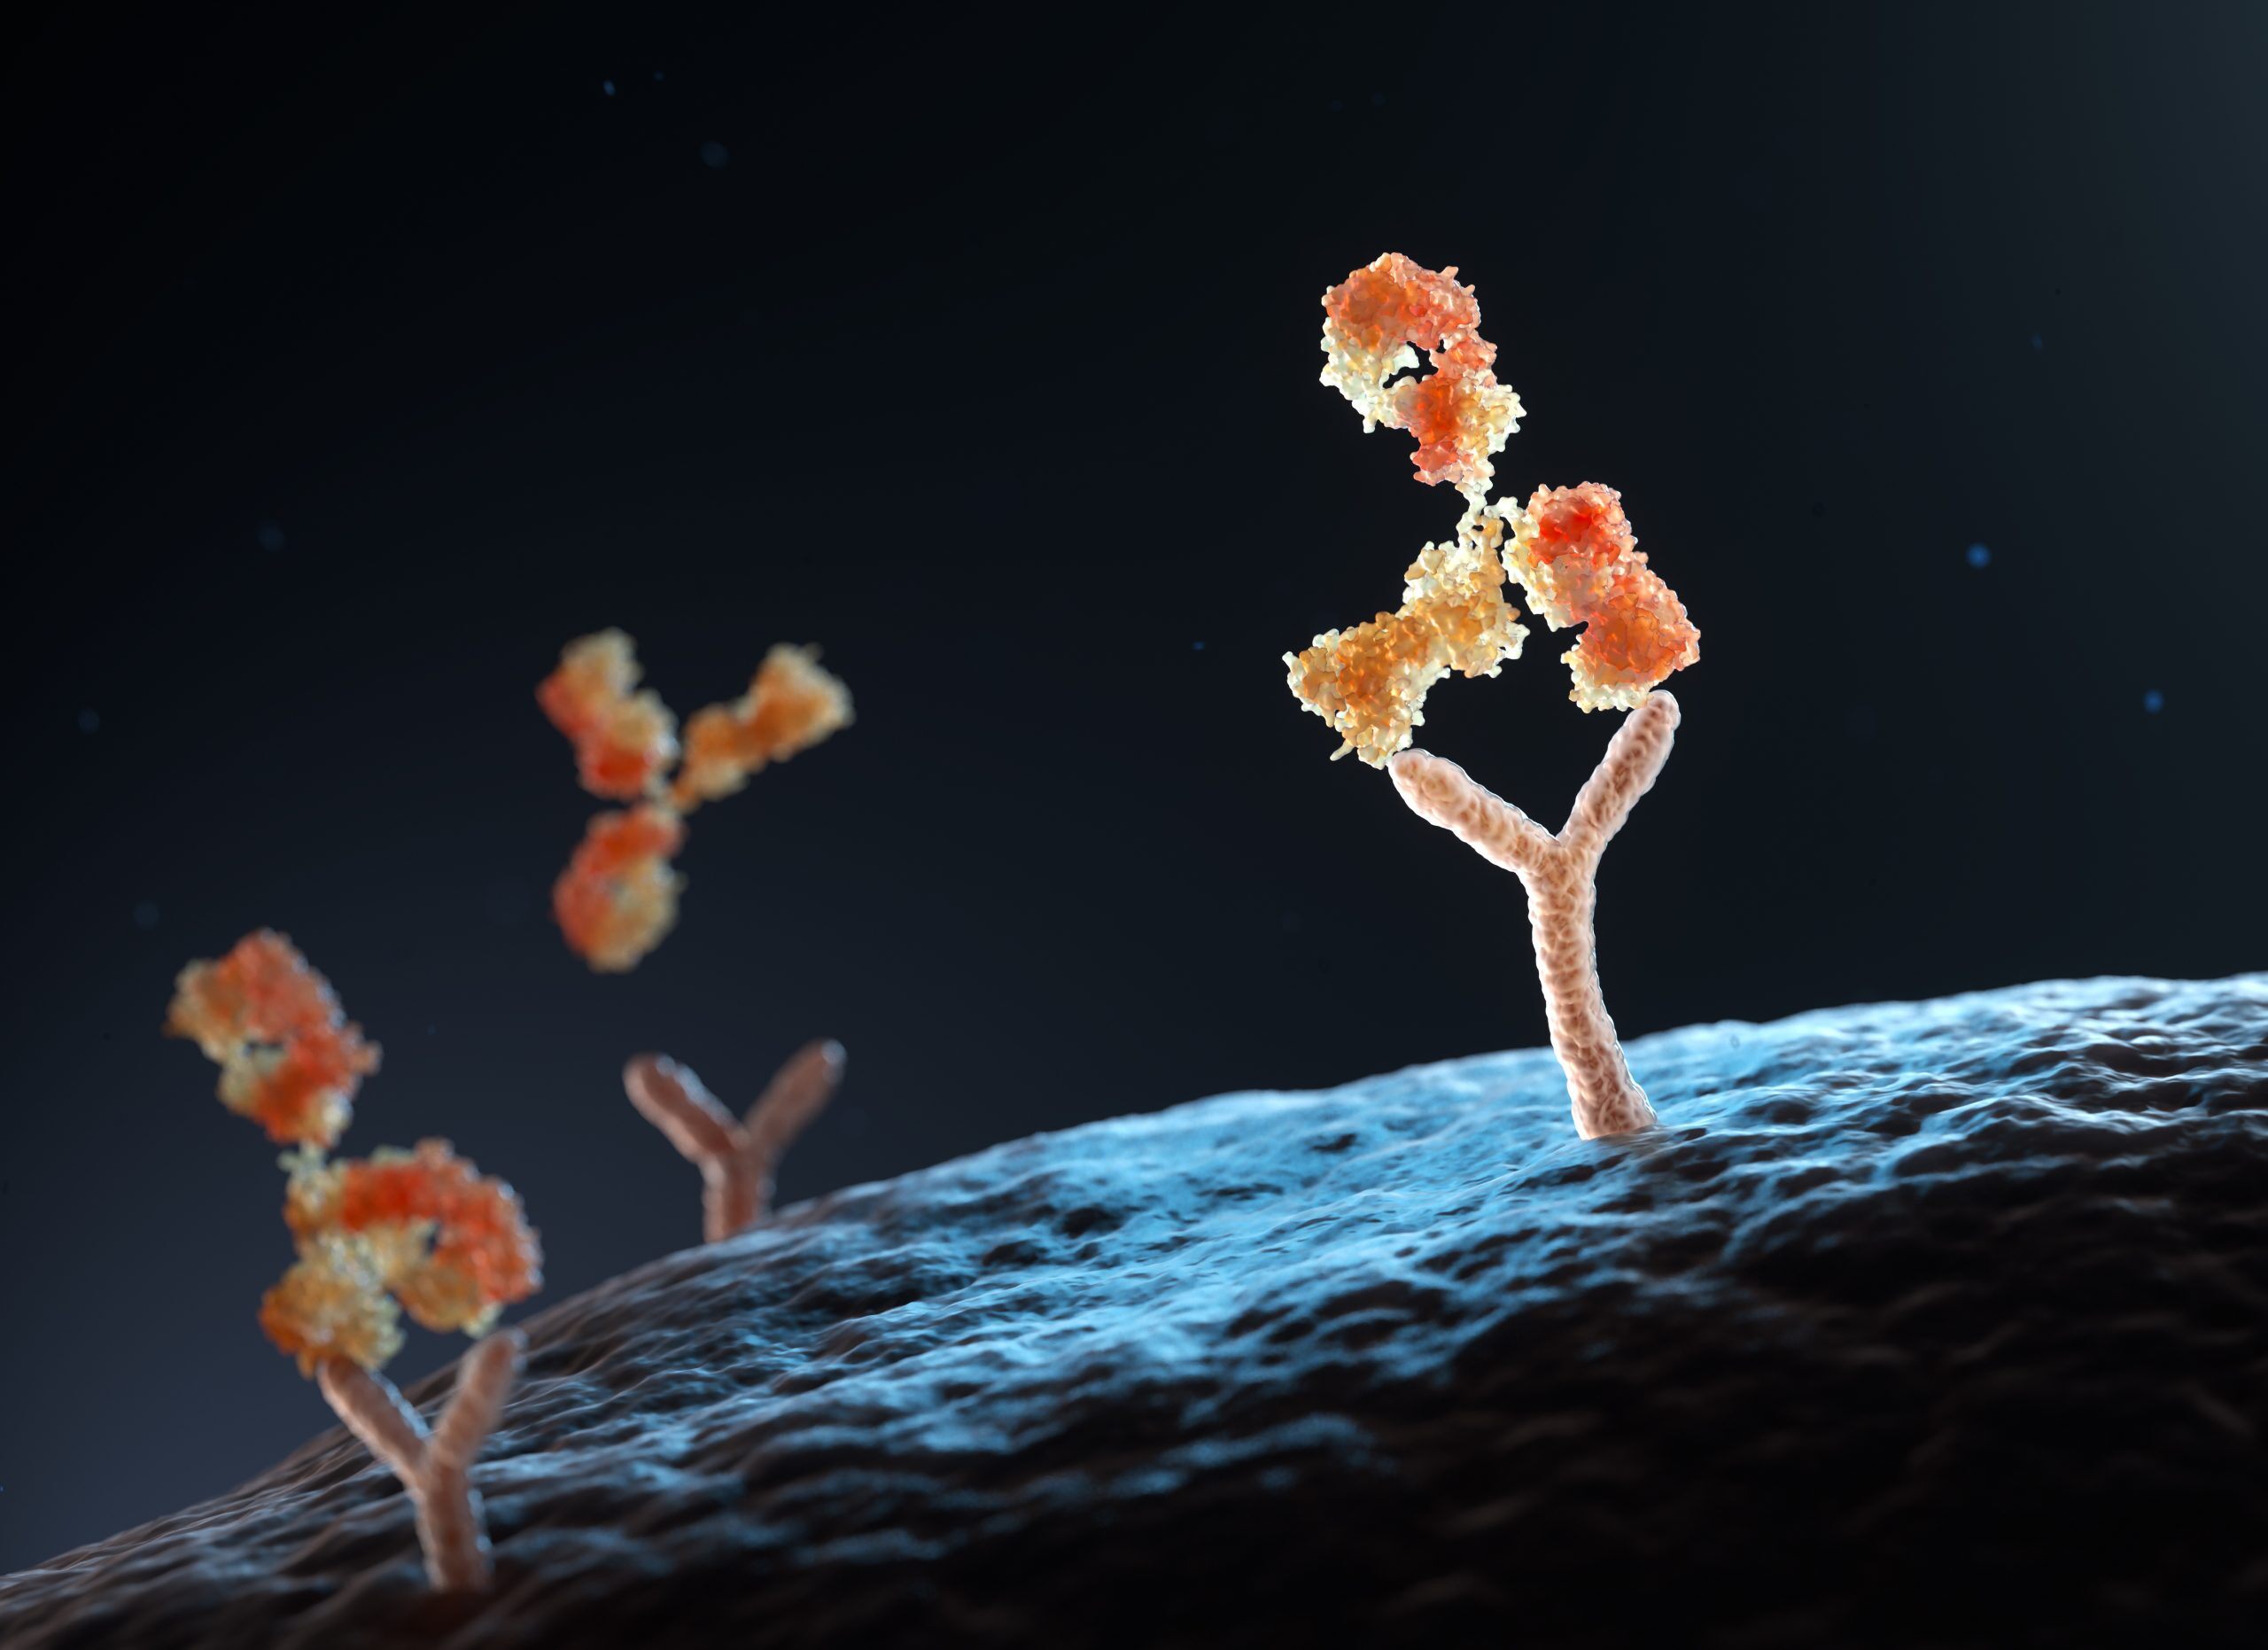 Antibody binding to human cell receptors